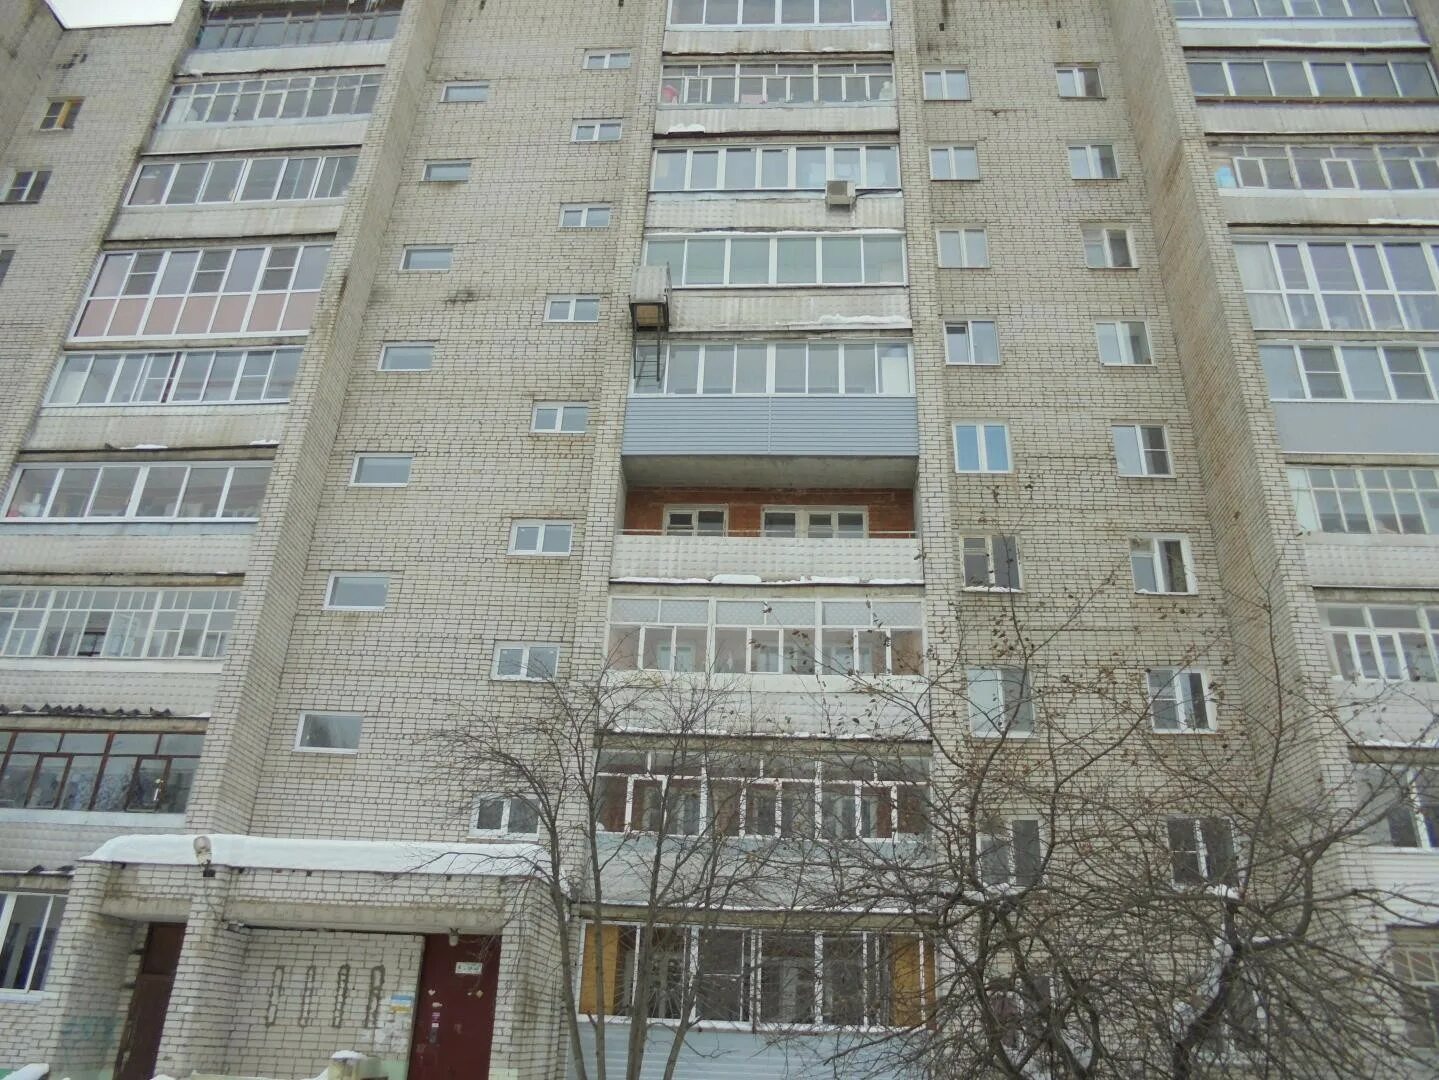 Кулибина 10 Рыбинск. Улица Кулибина 10 Рыбинск. Улица Кулибина Рыбинск.